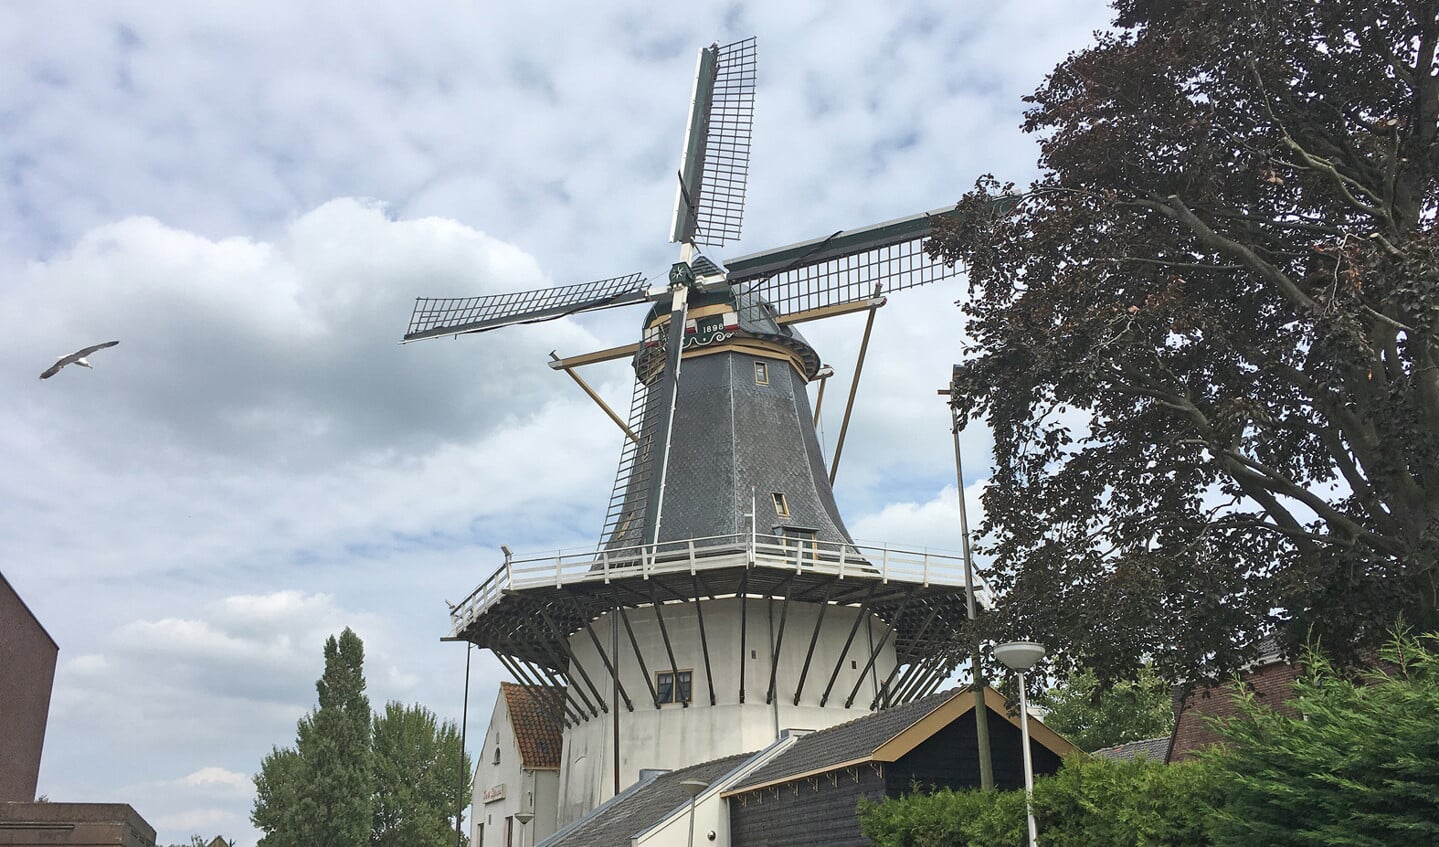 Het aantal molens tussen Schoonhoven en Gouda is opvallend. Meer dan vijftien oer-Hollandse molens staan er langs deze route.